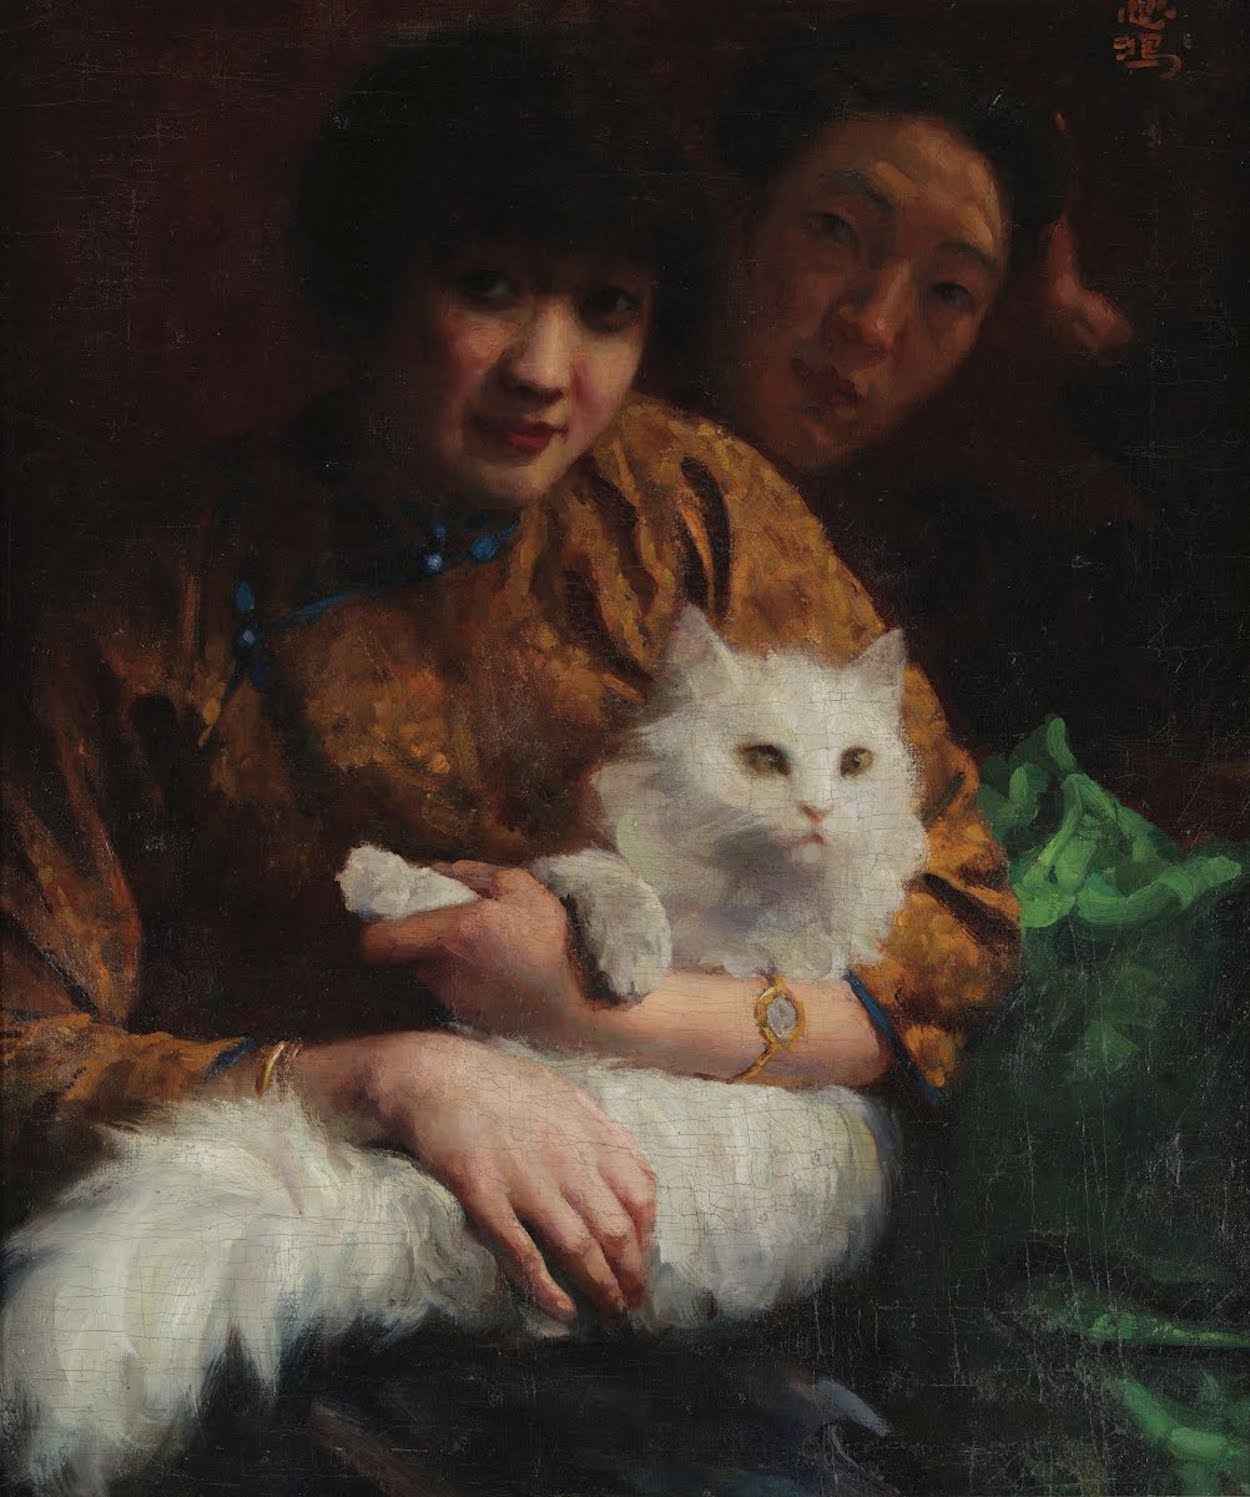 고양이 쓰다듬기(Stroking the Cat) by Xu Beihong - 1924 - 65 x 53 cm 